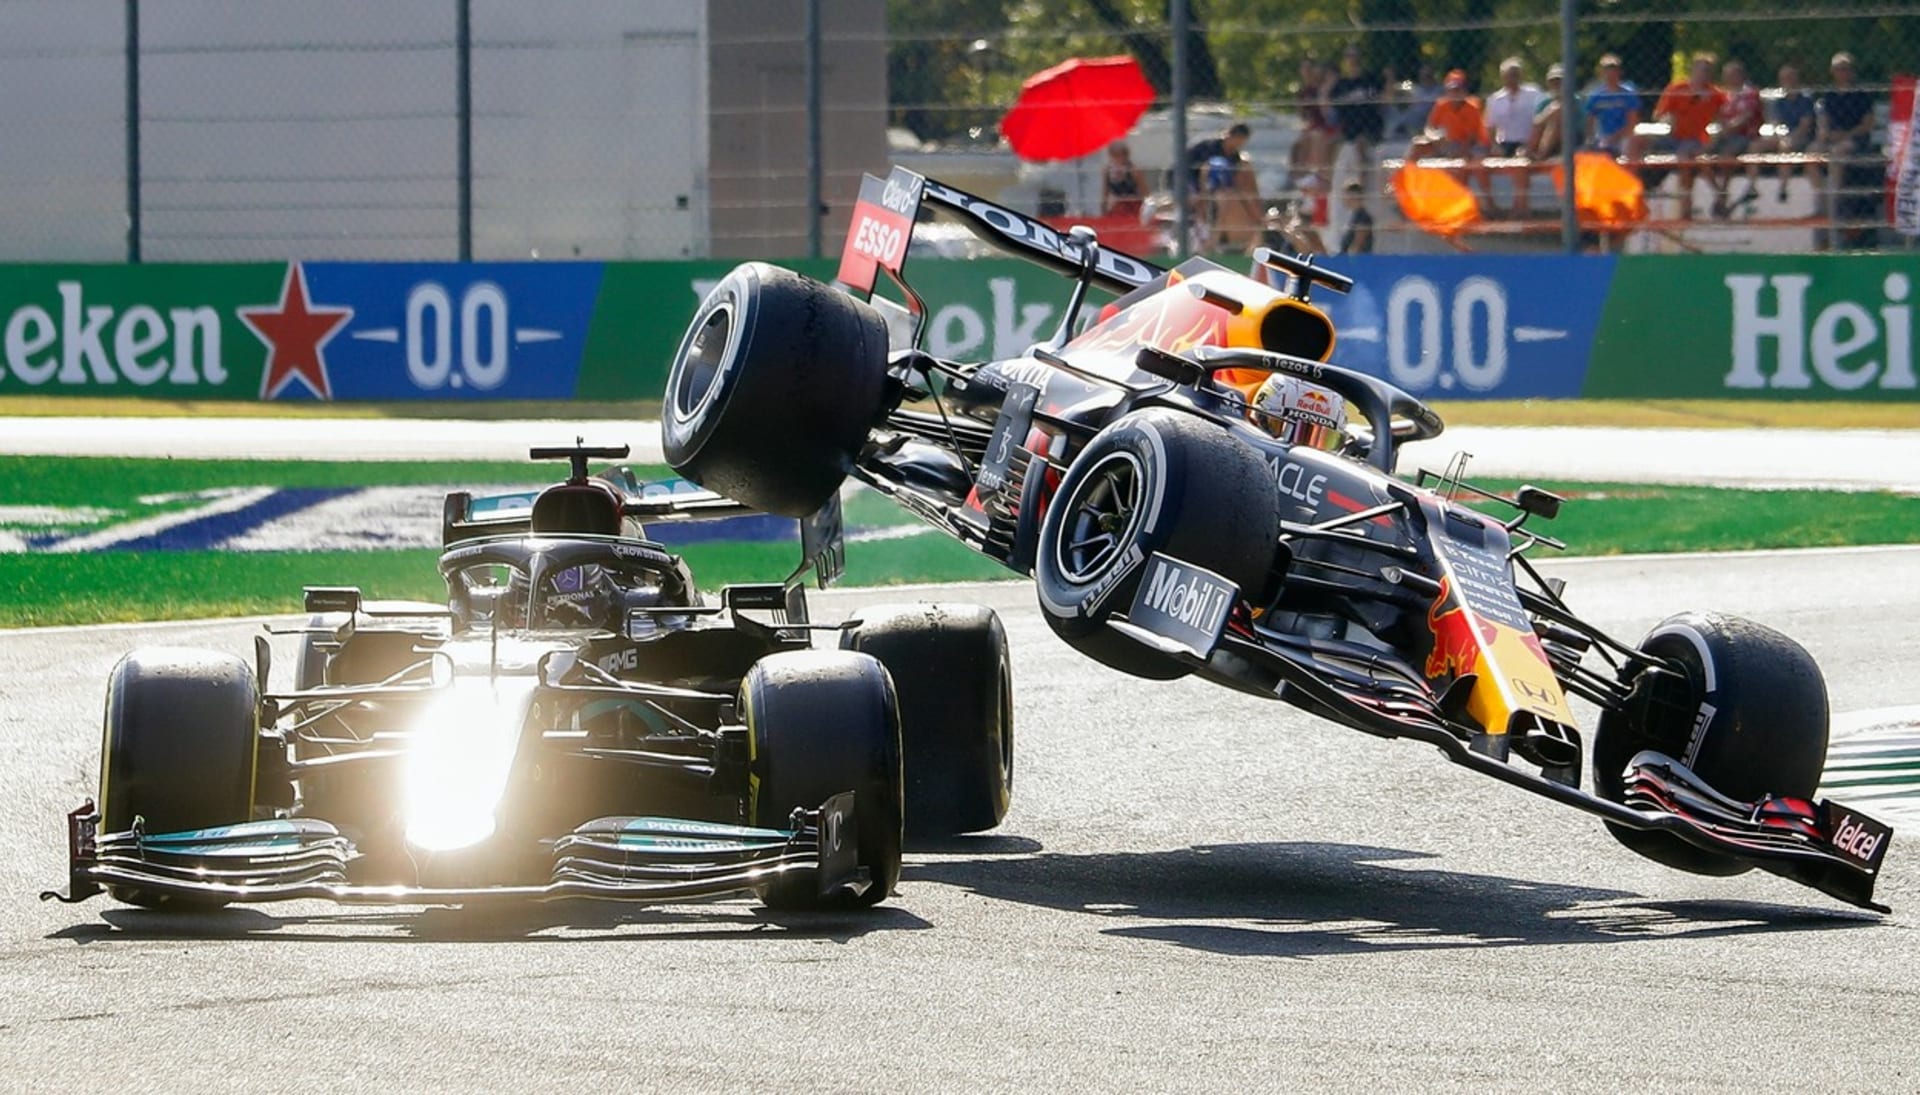 Kolize dvou hlavních mužů formule 1 vymrštila vůz Maxe Verstappena do vzduchu, což ohrozilo Hamiltona.